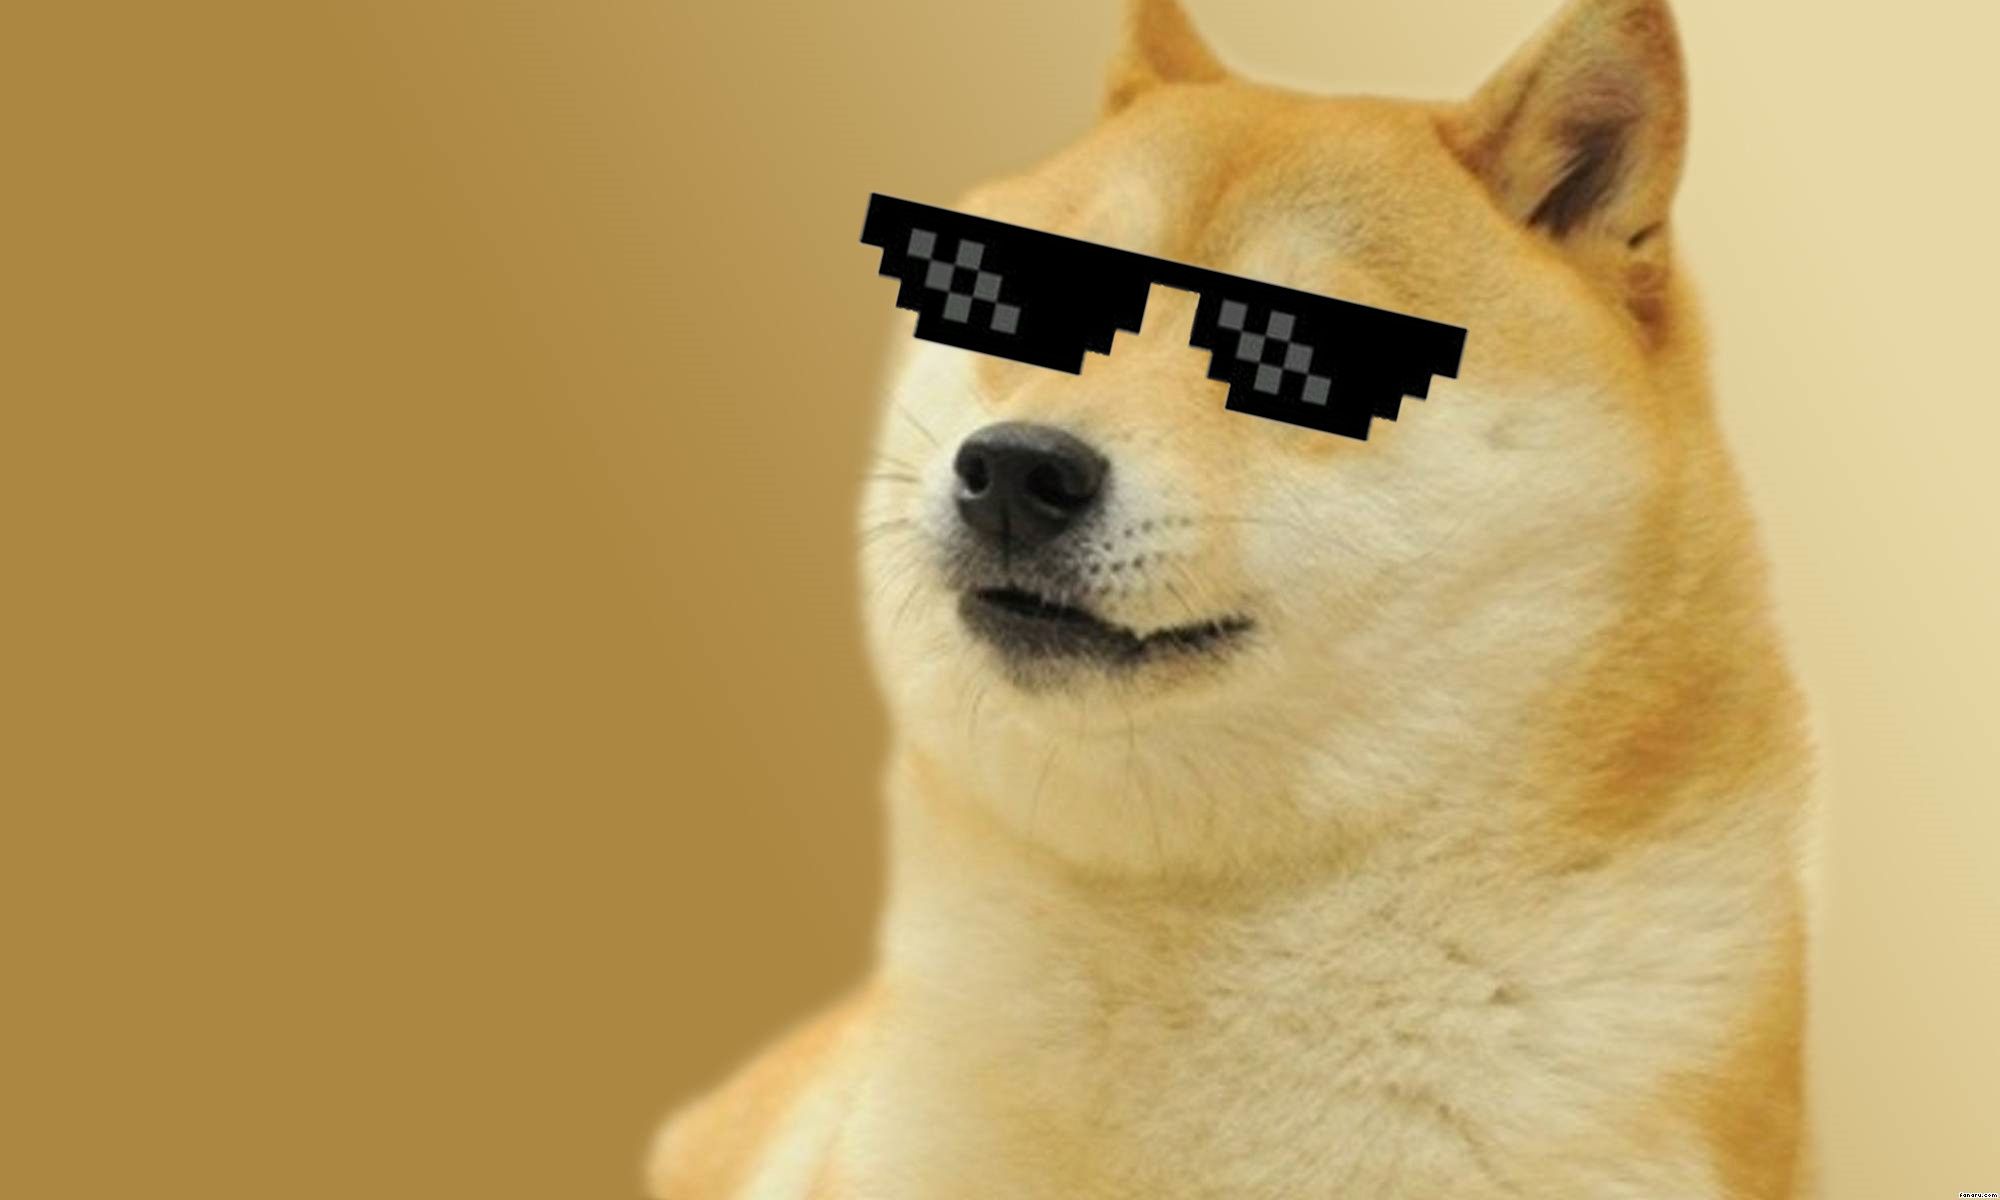 Doge Meme Wallpaper. Doge meme, Cute dog wallpaper, Doge dog